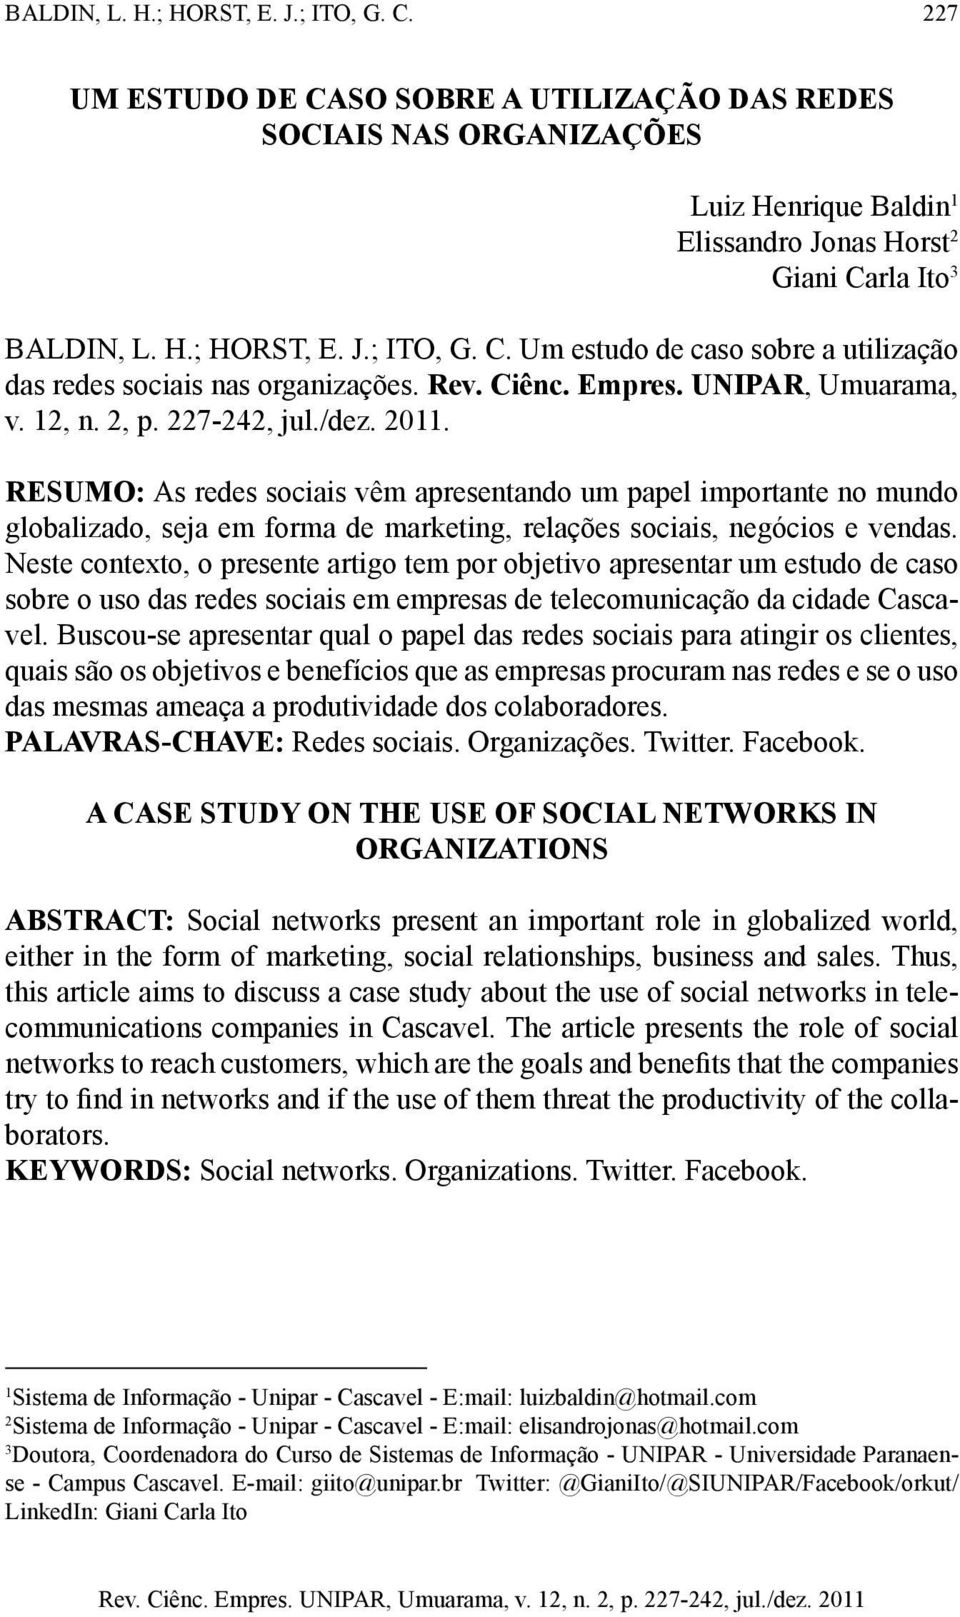 RESUMO: As redes sociais vêm apresentando um papel importante no mundo globalizado, seja em forma de marketing, relações sociais, negócios e vendas.